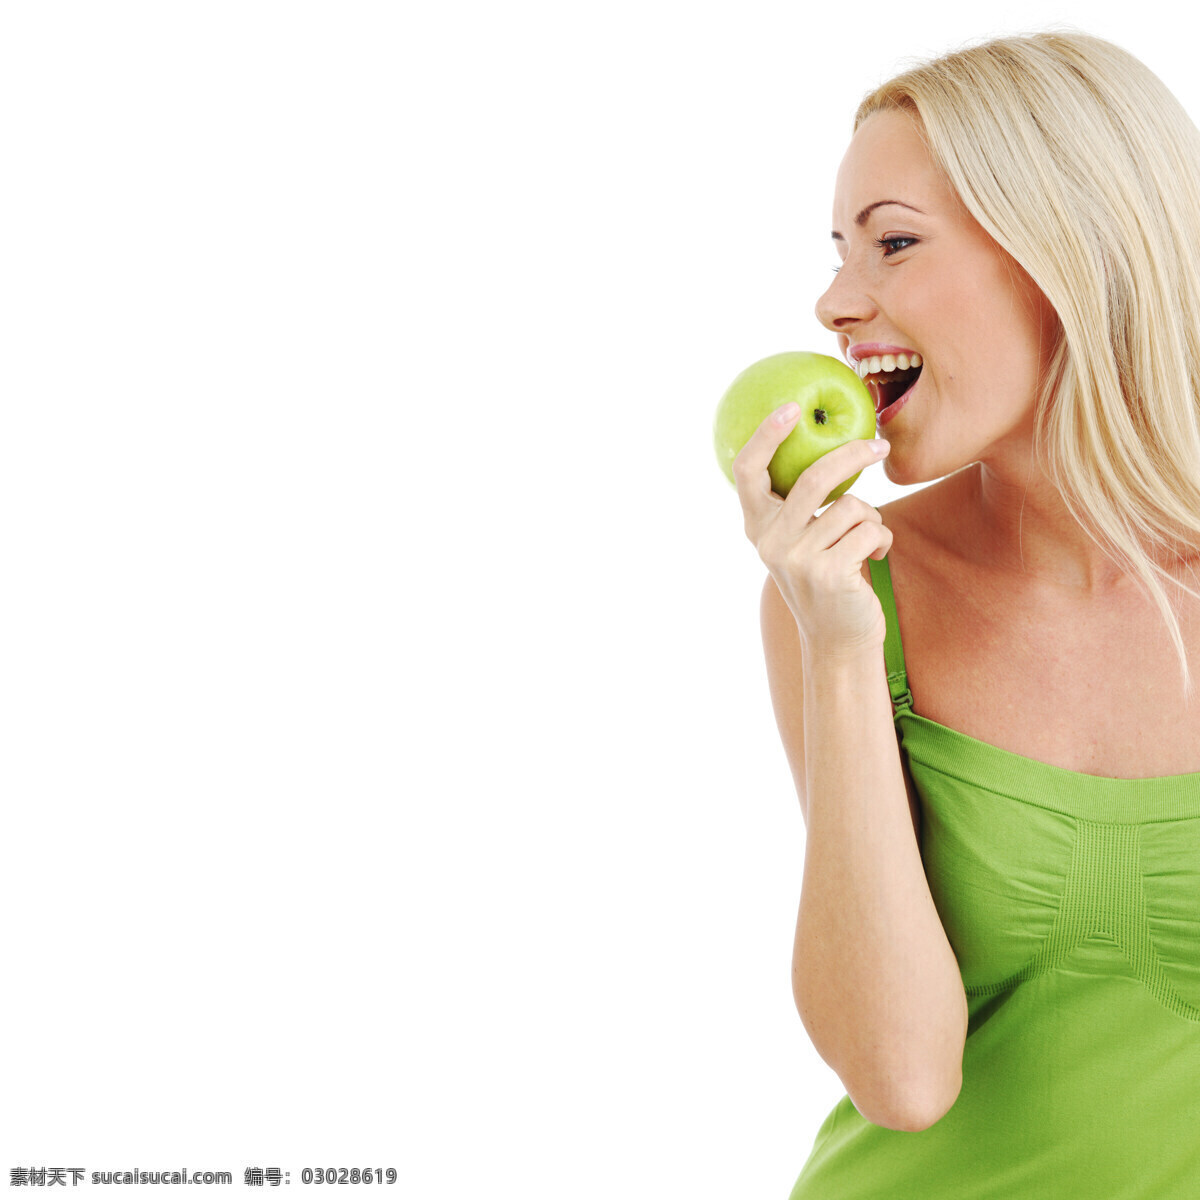 吃 苹果 美女图片 健康牙齿 洁白牙齿 健康洁白 微笑 笑容 吃苹果 水果 美女 人体器官图 人物图片